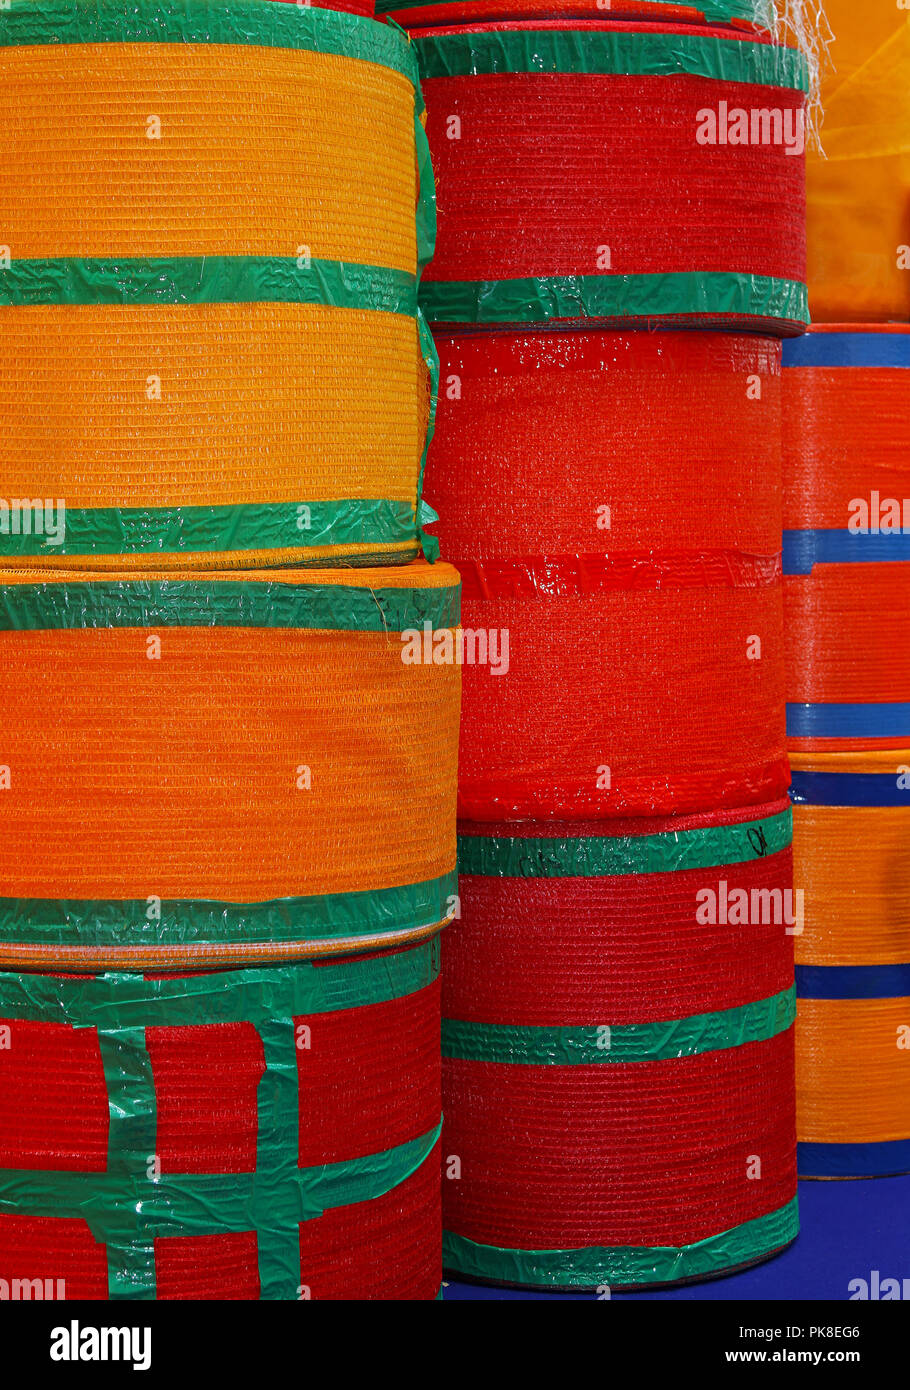 Los rollos de red tejida de embalaje para frutas y verduras Foto de stock